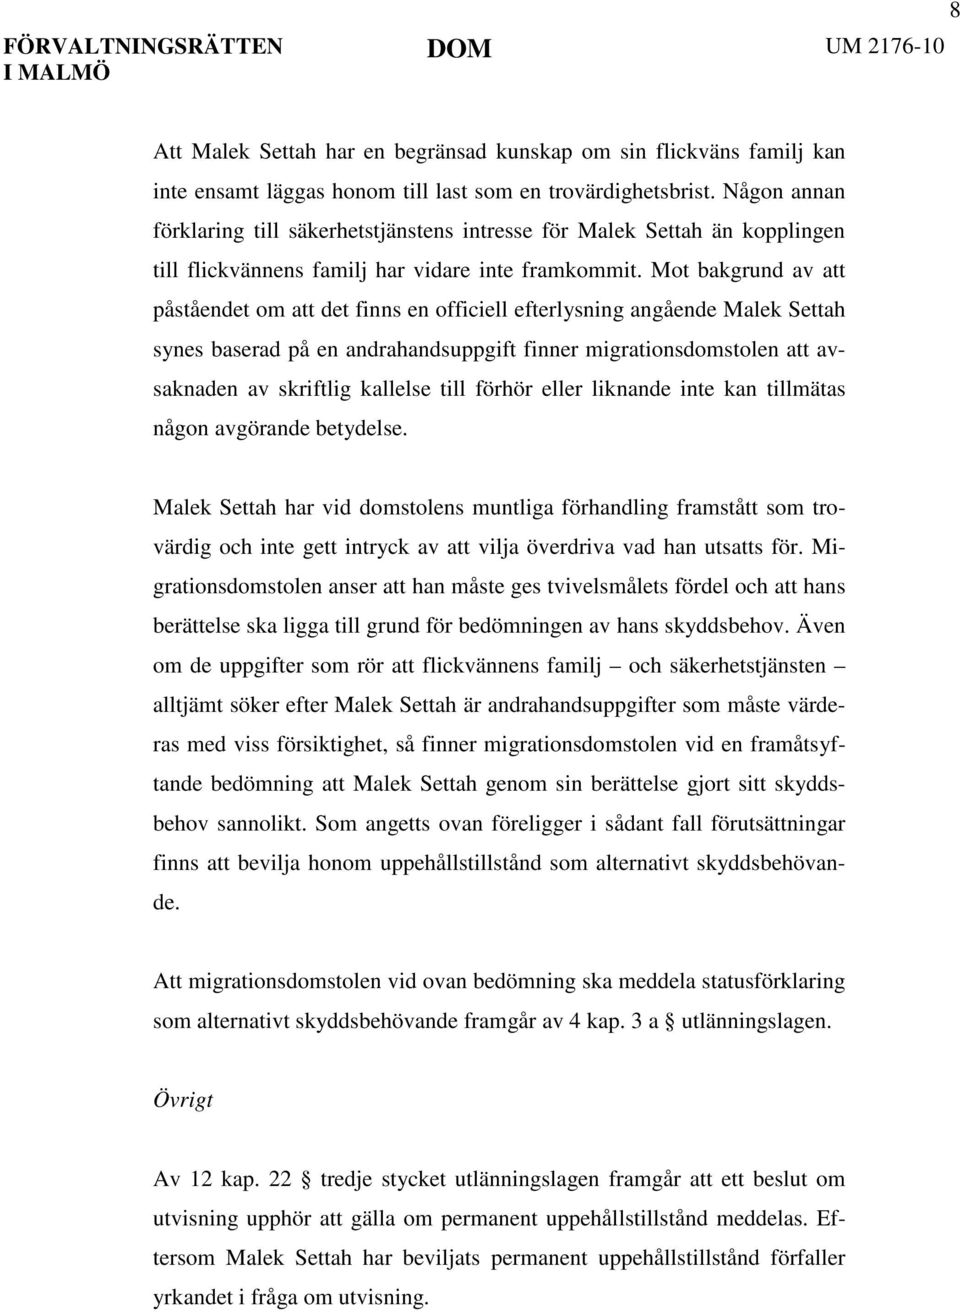 Mot bakgrund av att påståendet om att det finns en officiell efterlysning angående Malek Settah synes baserad på en andrahandsuppgift finner migrationsdomstolen att avsaknaden av skriftlig kallelse